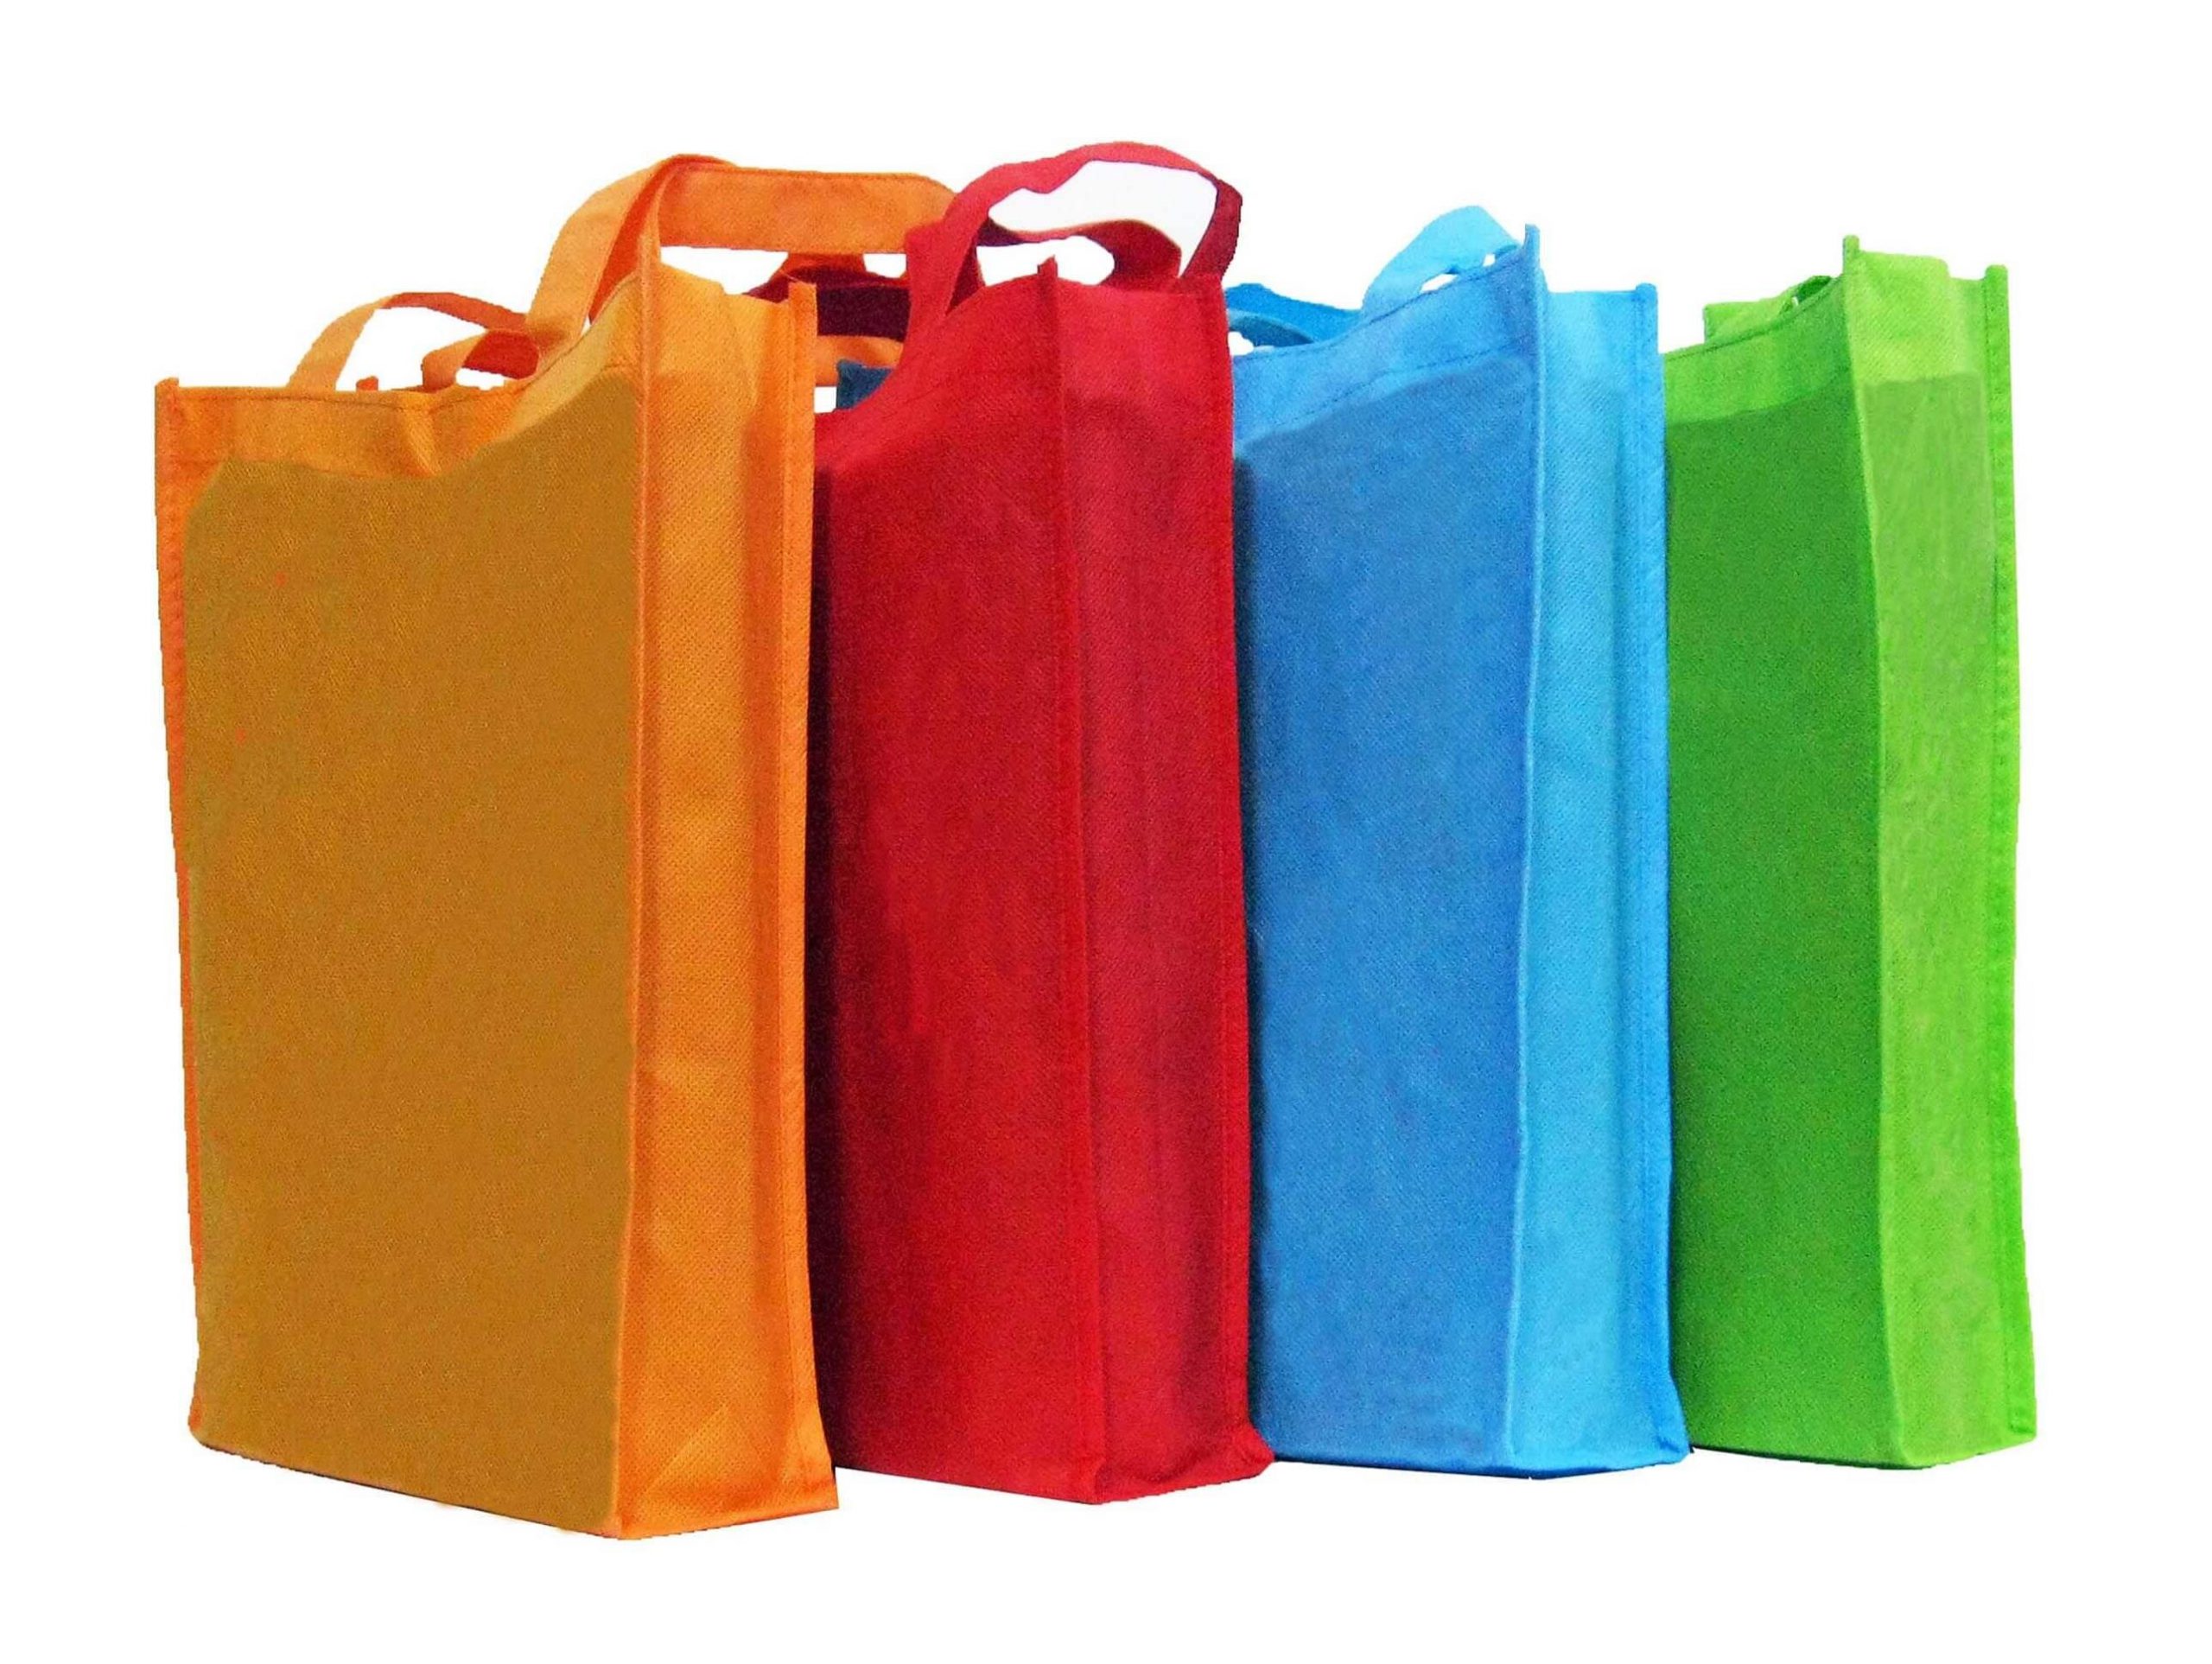 túi vải không dệt dần trở nên phổ biến trong ngành bán lẻ khắp thế giới.